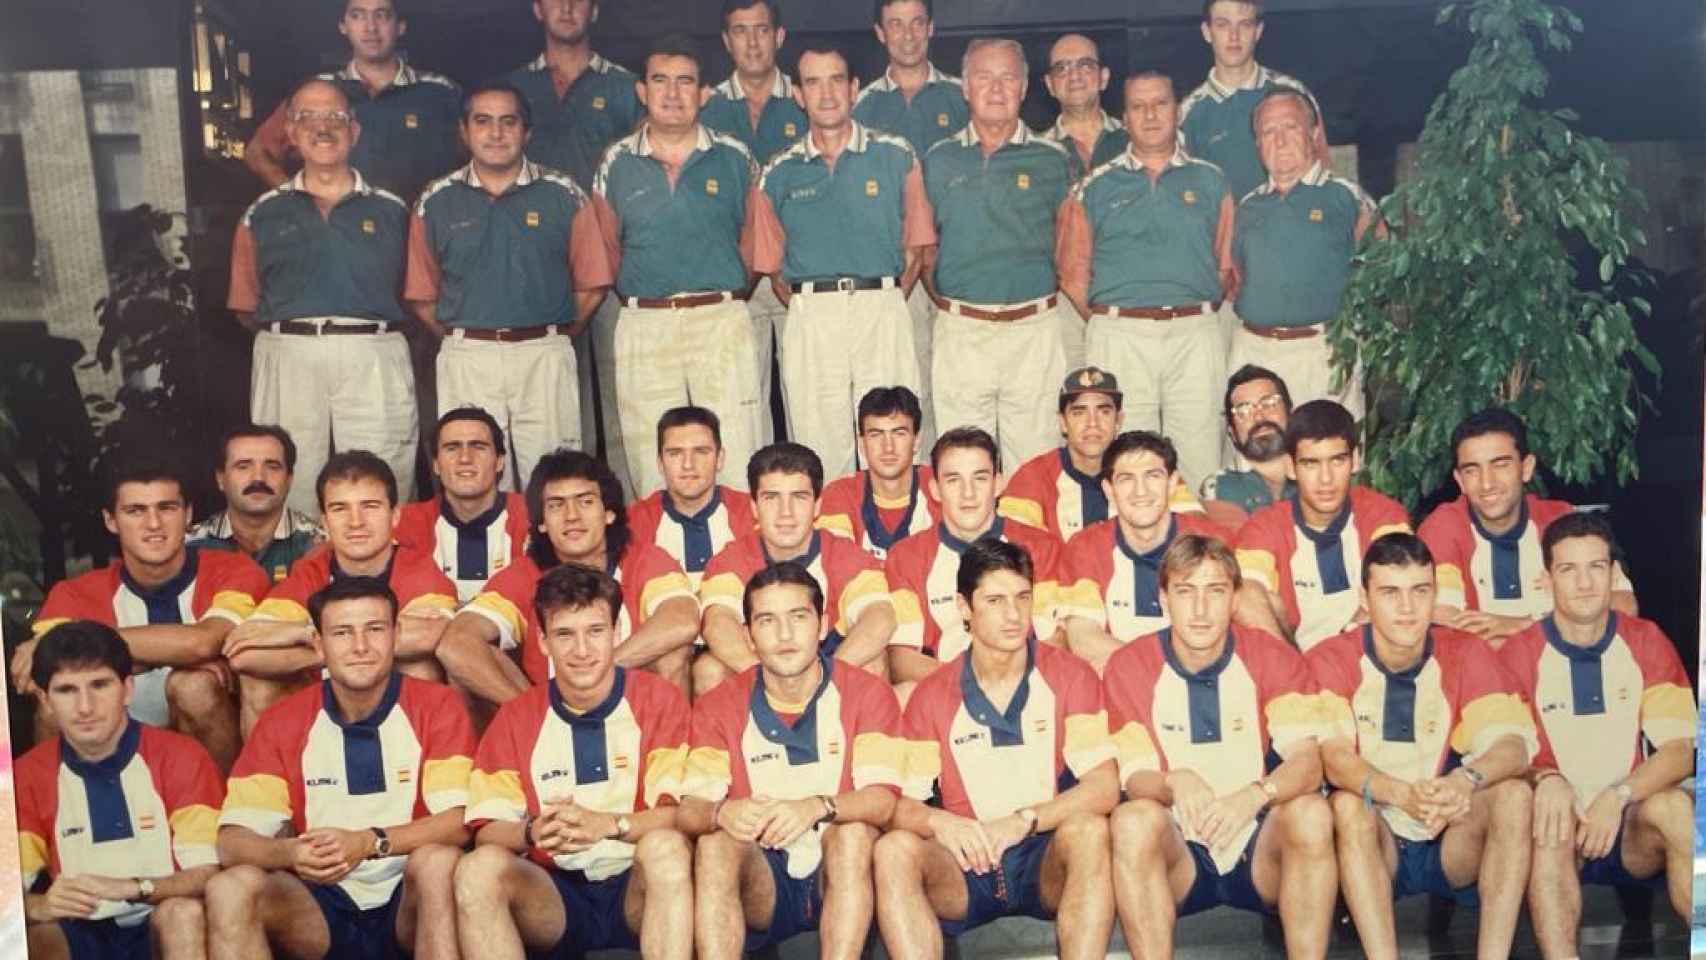 La única foto de equipo y cuerpo técnico que hay de Barcelona '92 más allá de la de la medalla, porque el grupo no quiso hacérsela con el presidente y la junta directiva de la RFEF de ese momento que encabezaba Ángel María Villar